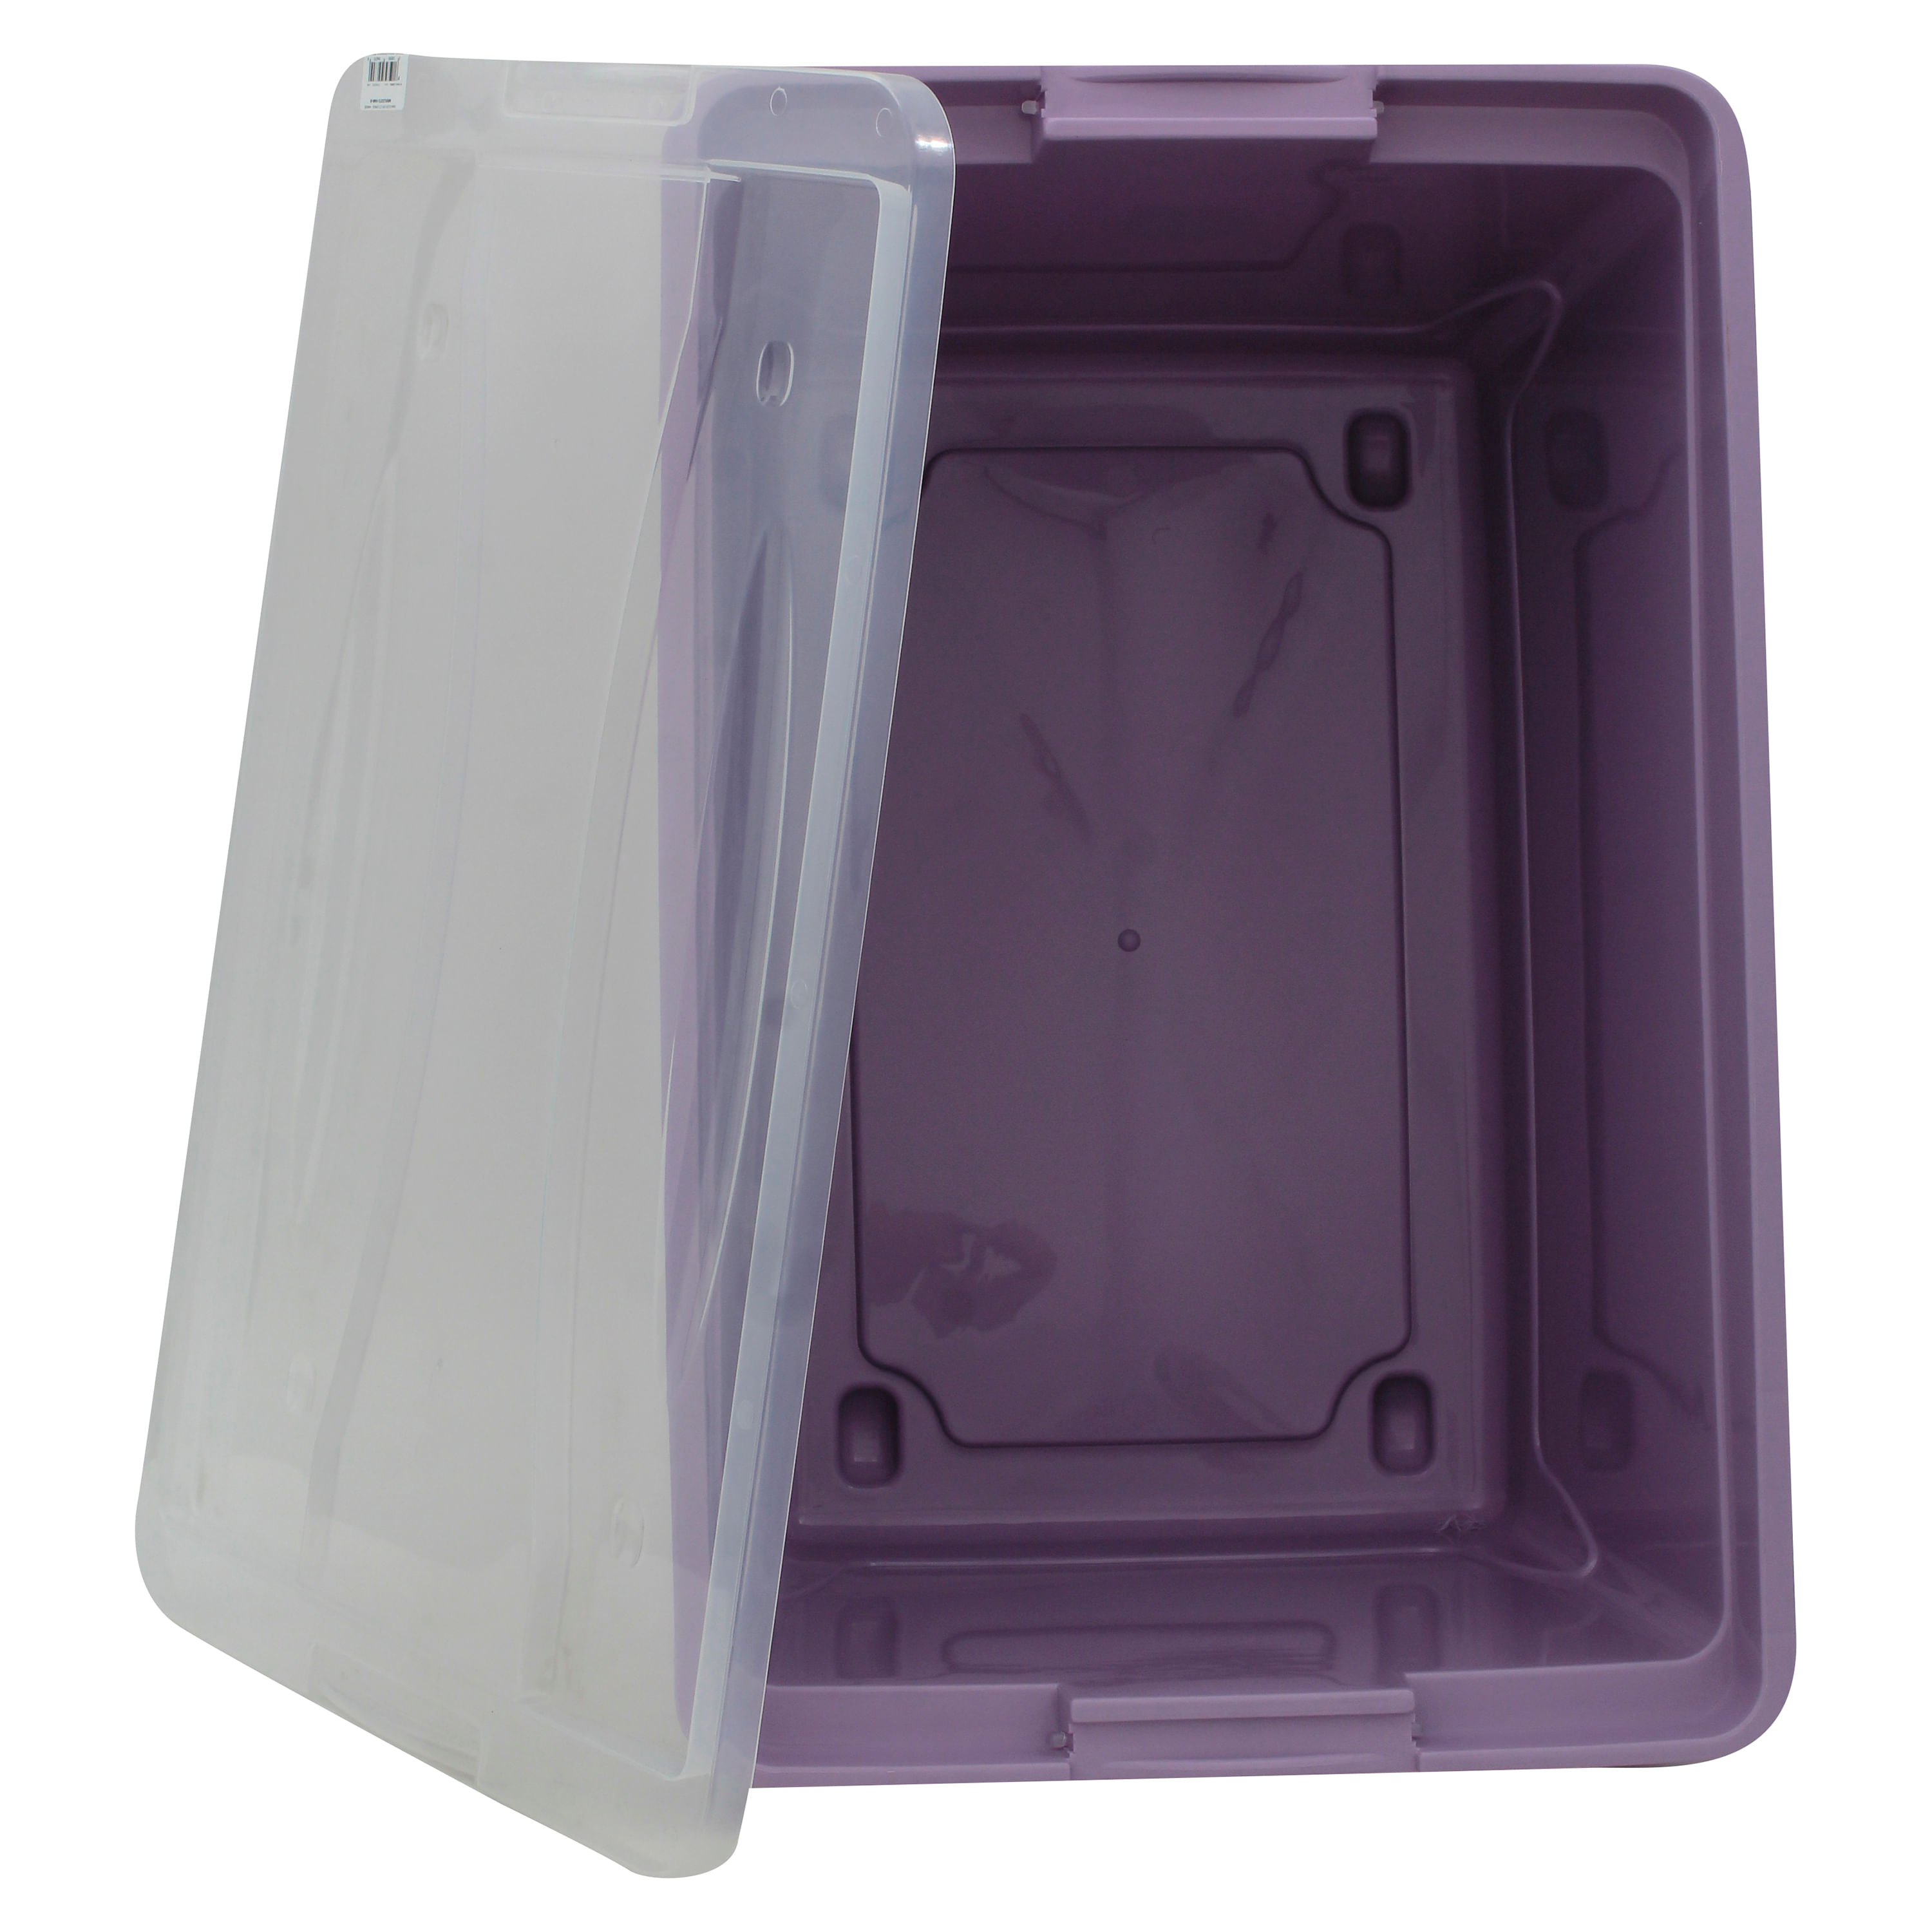 Cajas de Plástico Guateplast para organizar tus ambientes